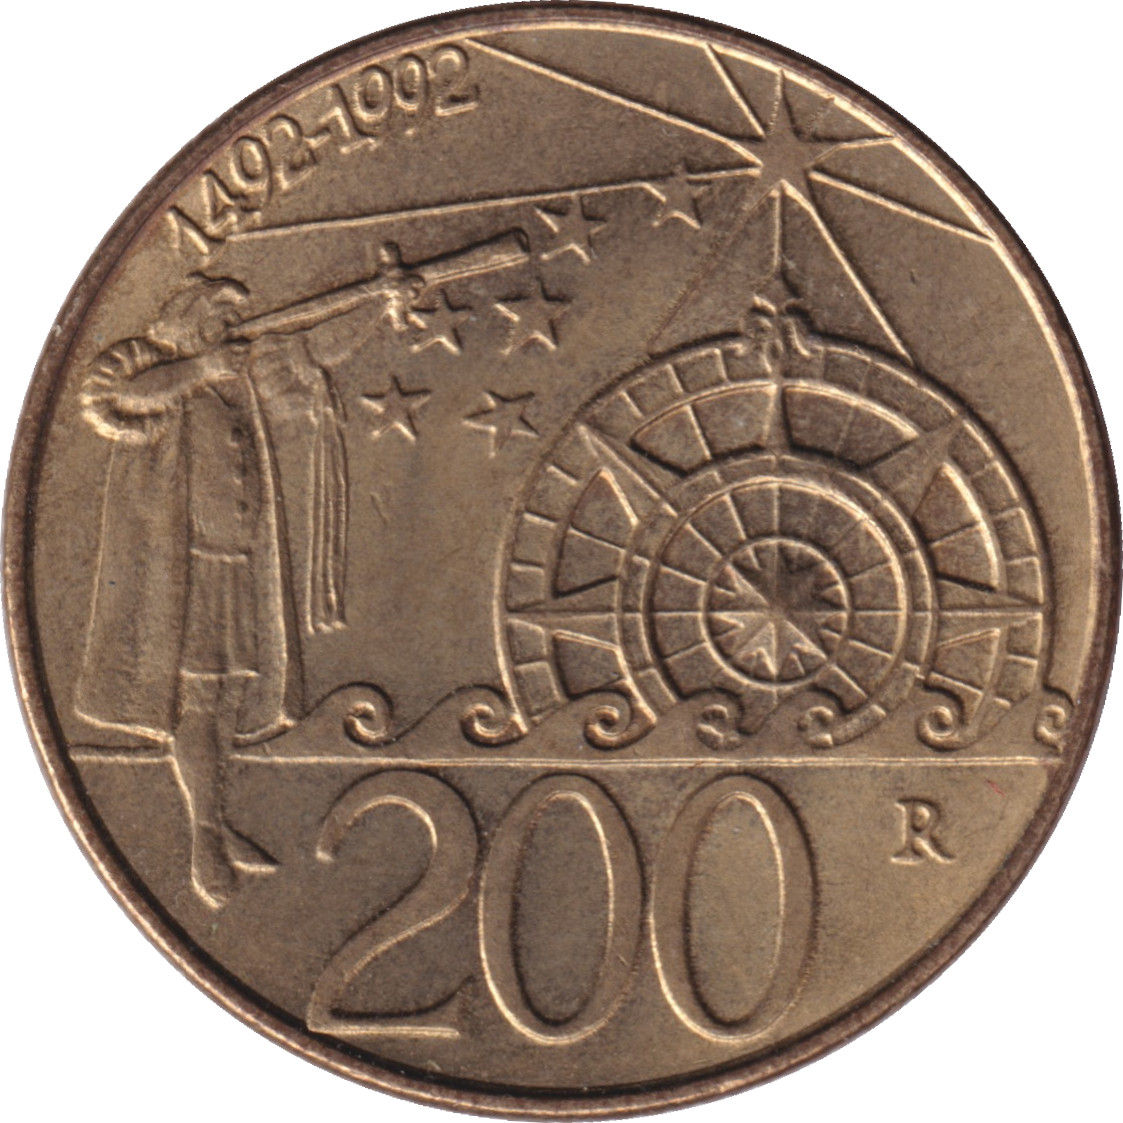 200 lire - Découverte des Amériques - 500 years